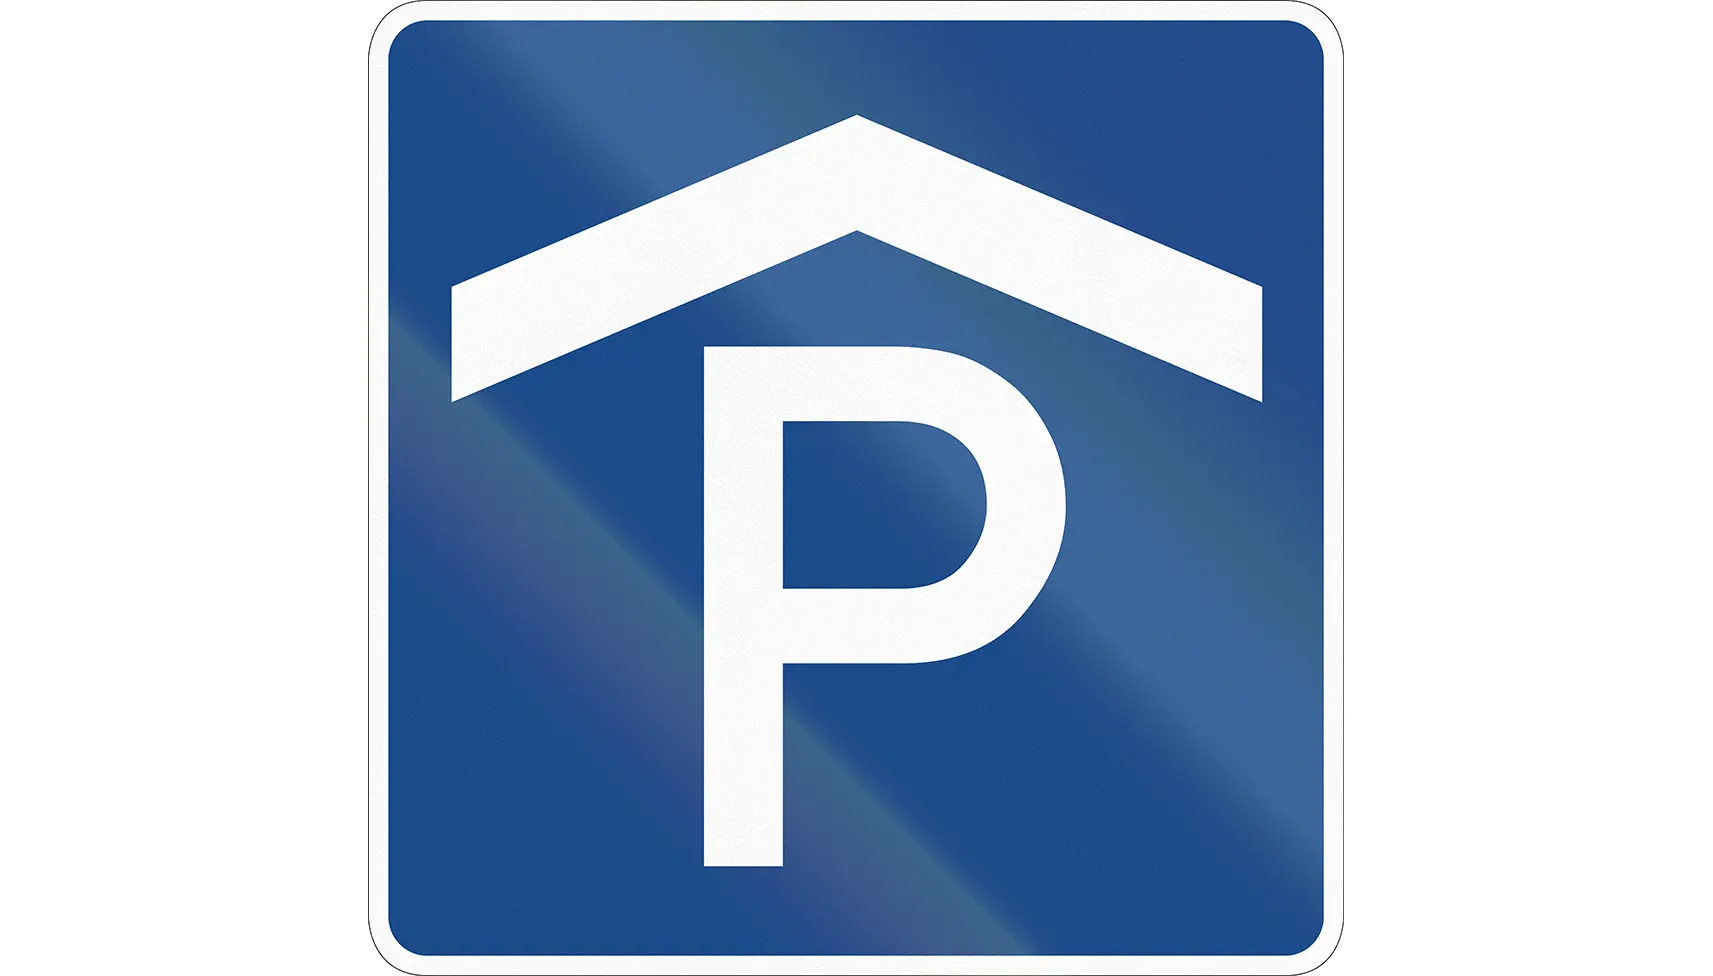 Blå-vit symbol för parkeringshus. Ett stort P med ett tak över.